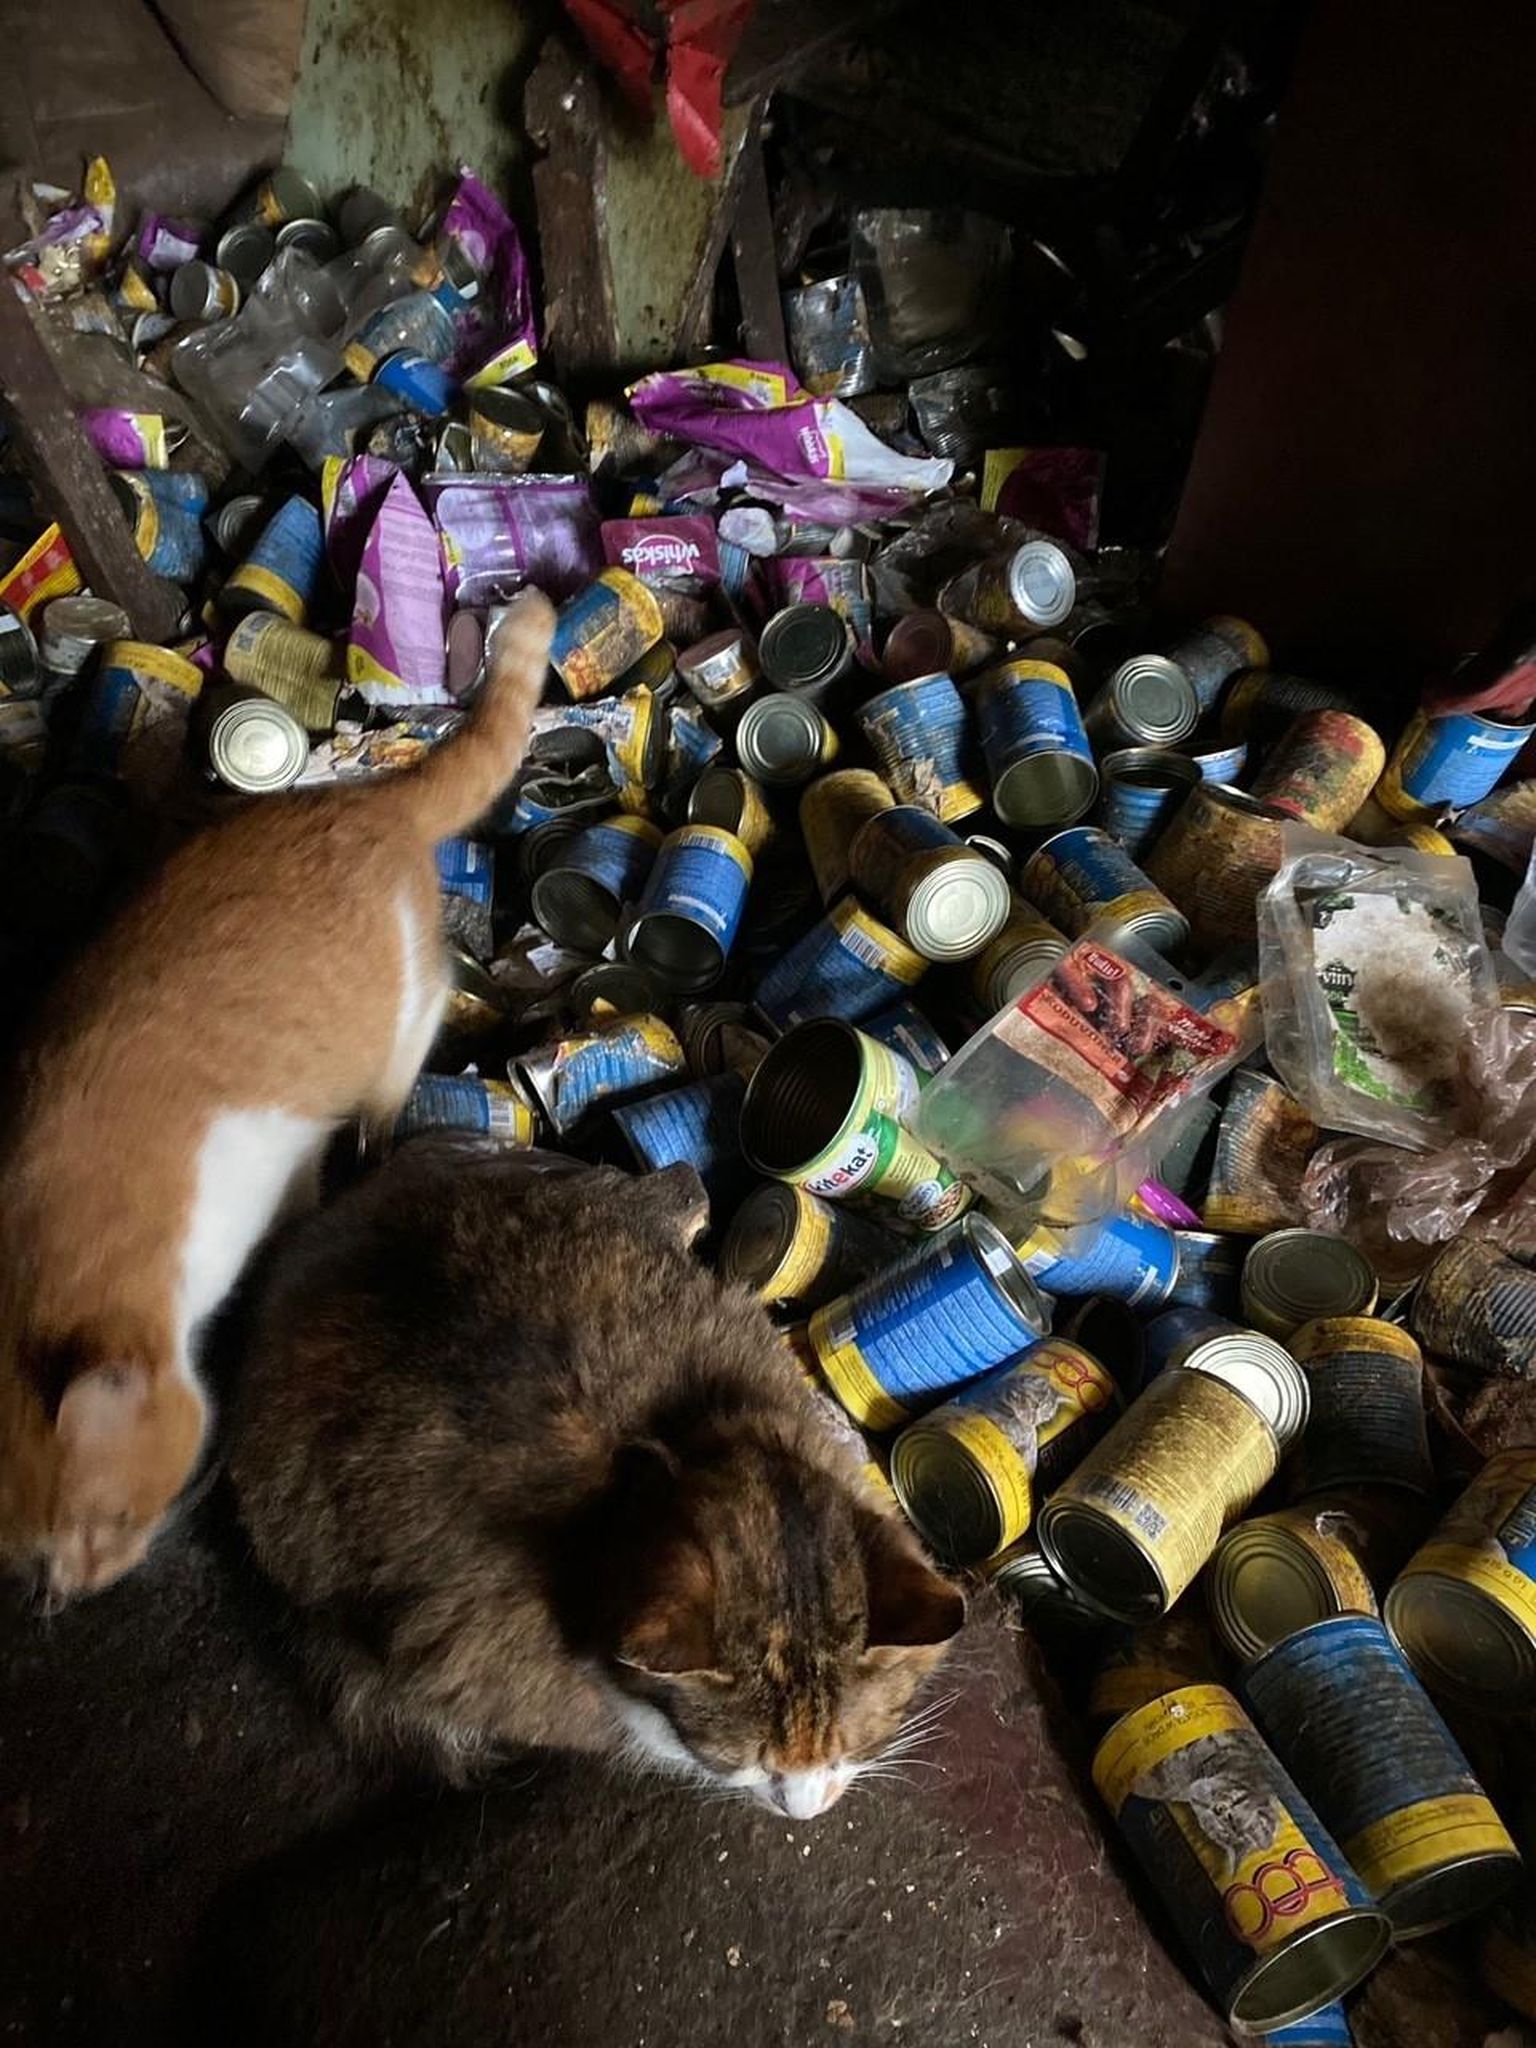 Õudustemajana kirjeldatud hoones elas 20 kassi, kes praeguseks on kõik ära päästetud. Kasside omanik oli pensionärist naine Heldi, kes käis mõned korrad nädalas kasse toitmas.